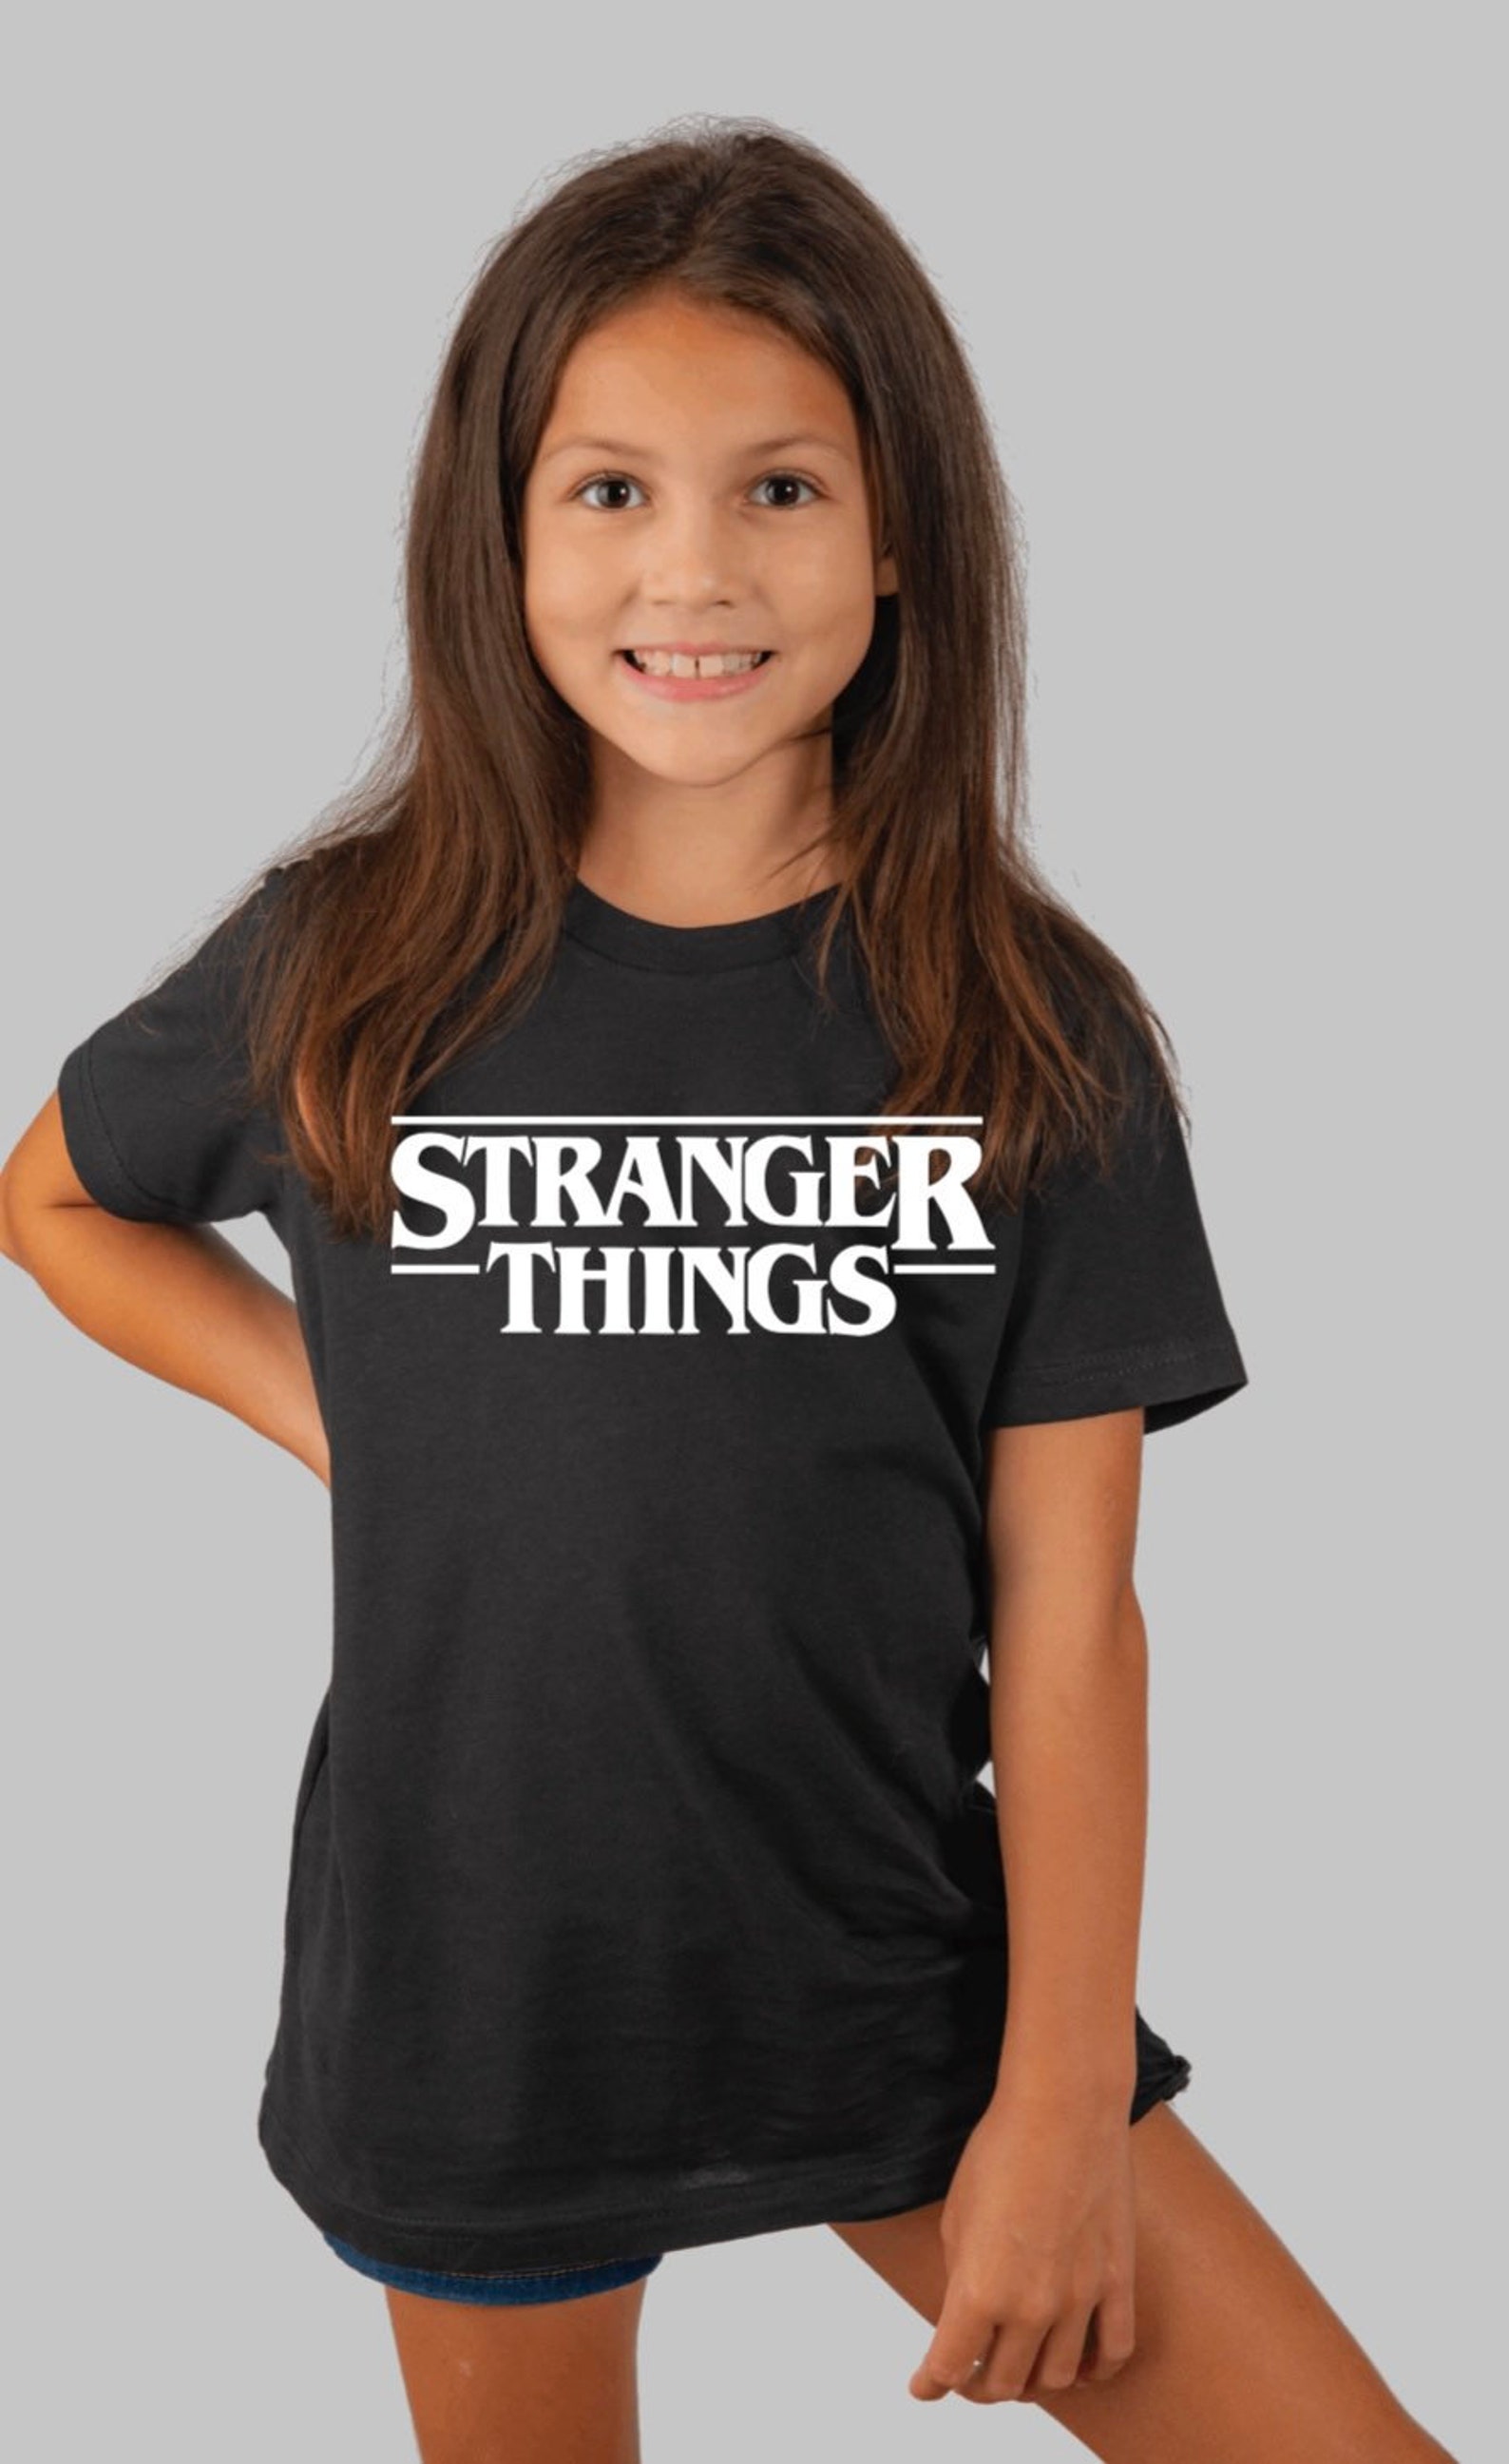 Stranger things kids t-shirt | Etsy